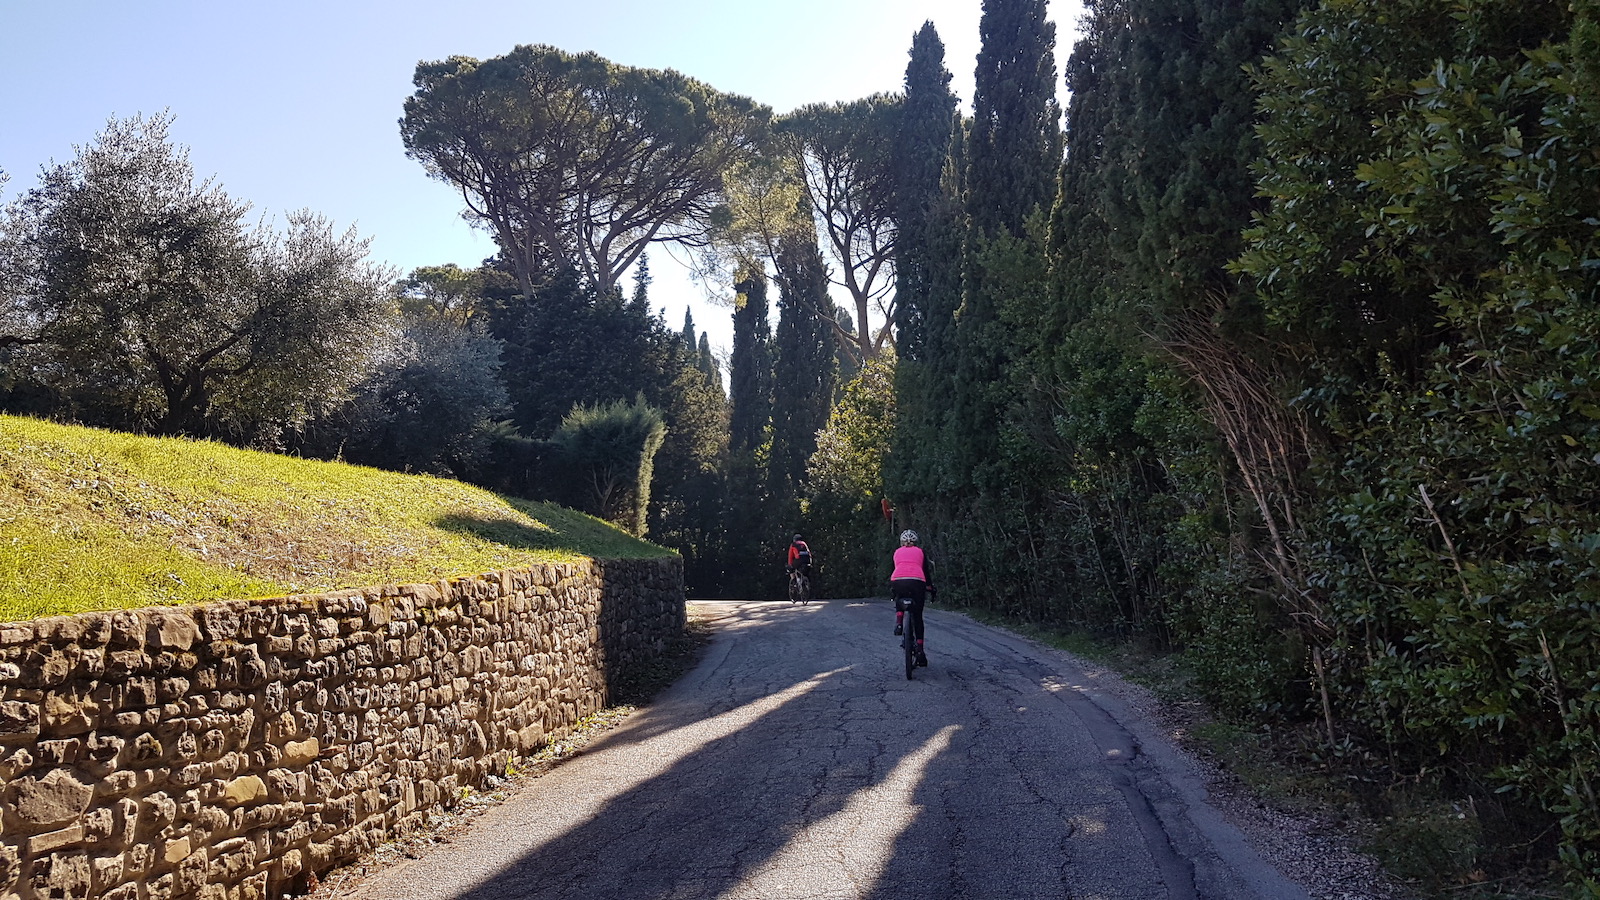 Assisi-Spello40